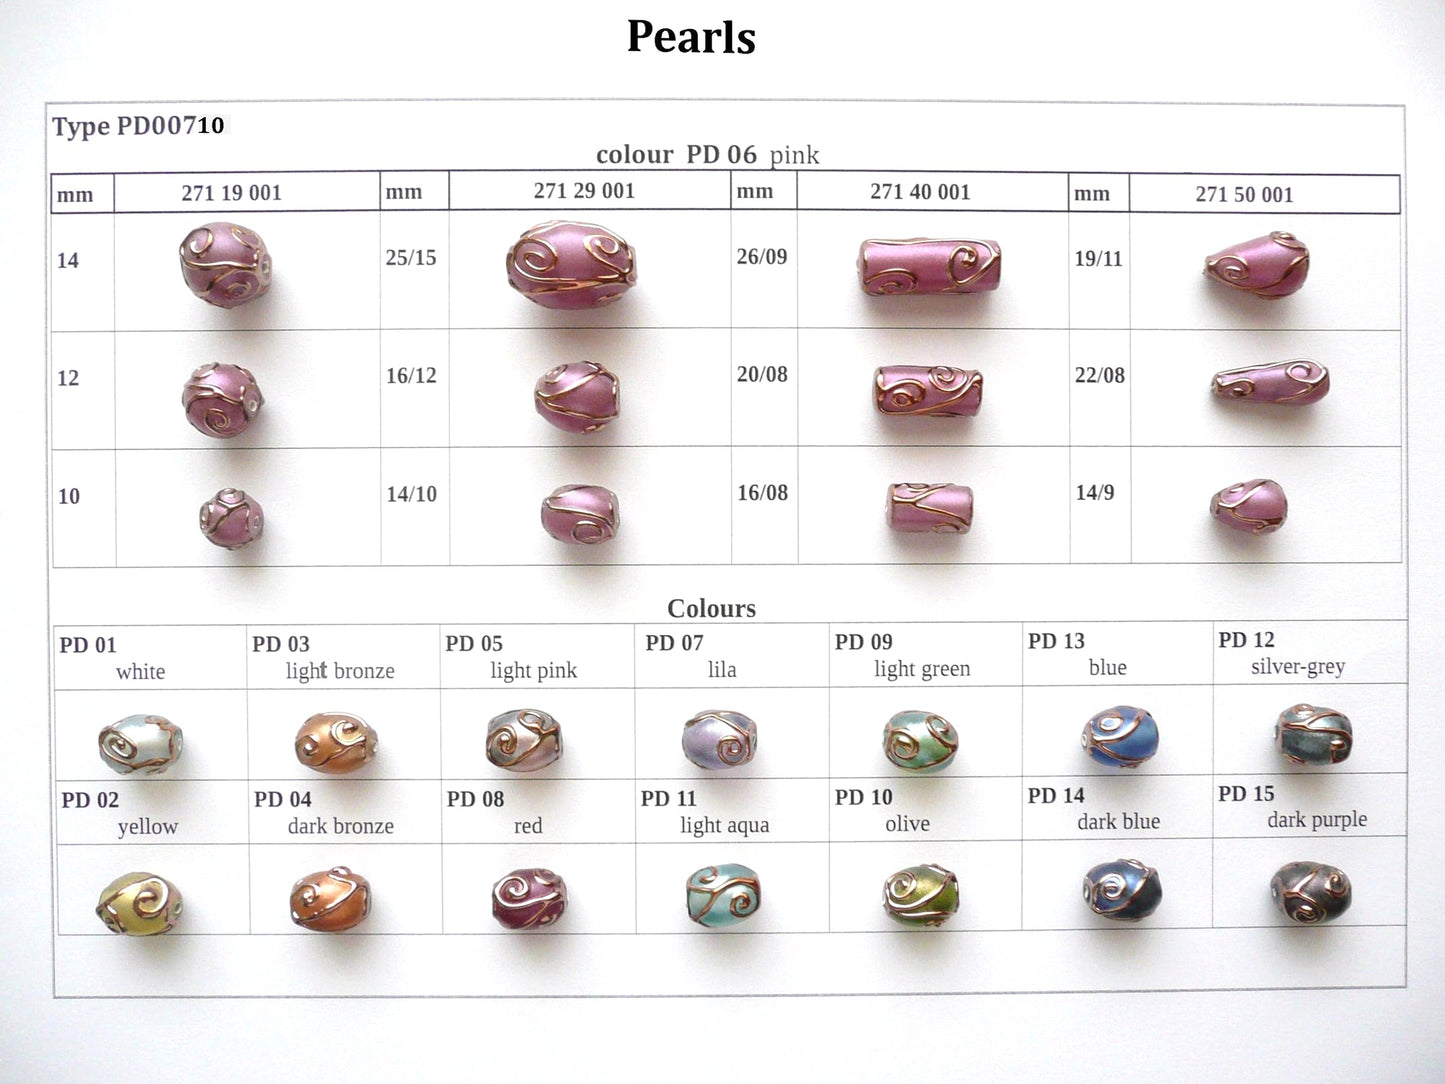 30 pcs Lampwork Beads Pearl Decor PD710 / Cylinder (271-40-001), Handmade, Preciosa Glass, Czech Republic